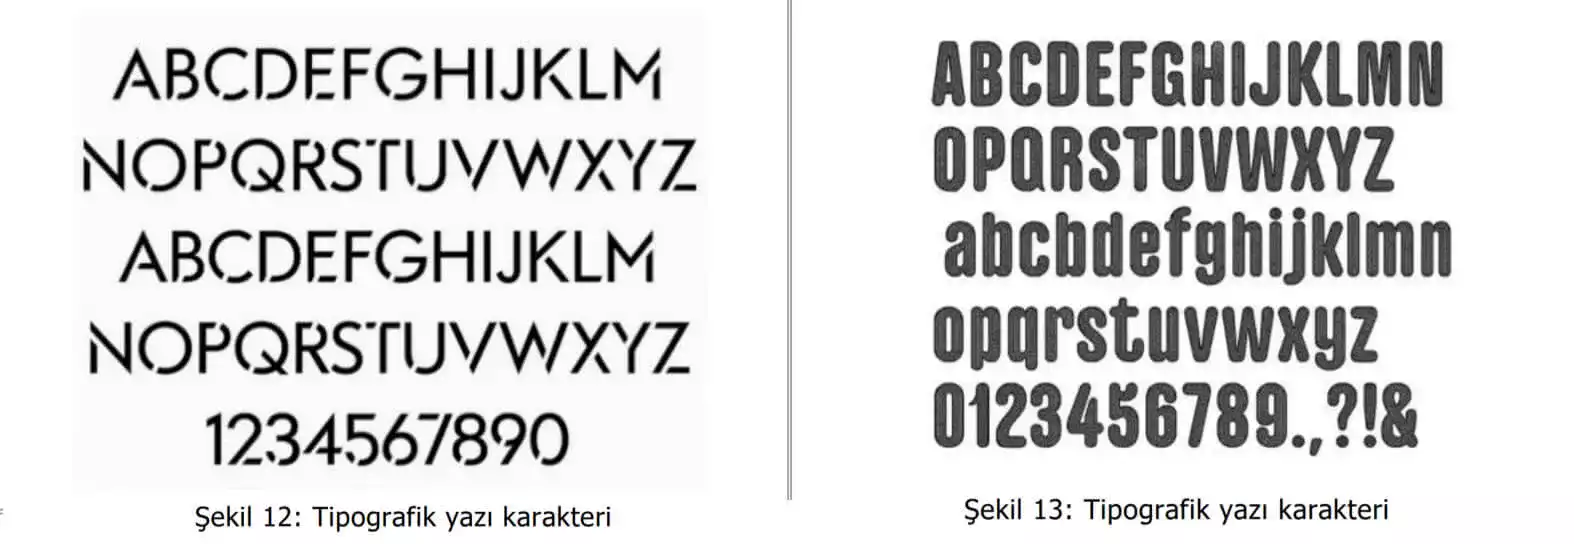 tipografik yazı karakter örnekleri-Kartal patent